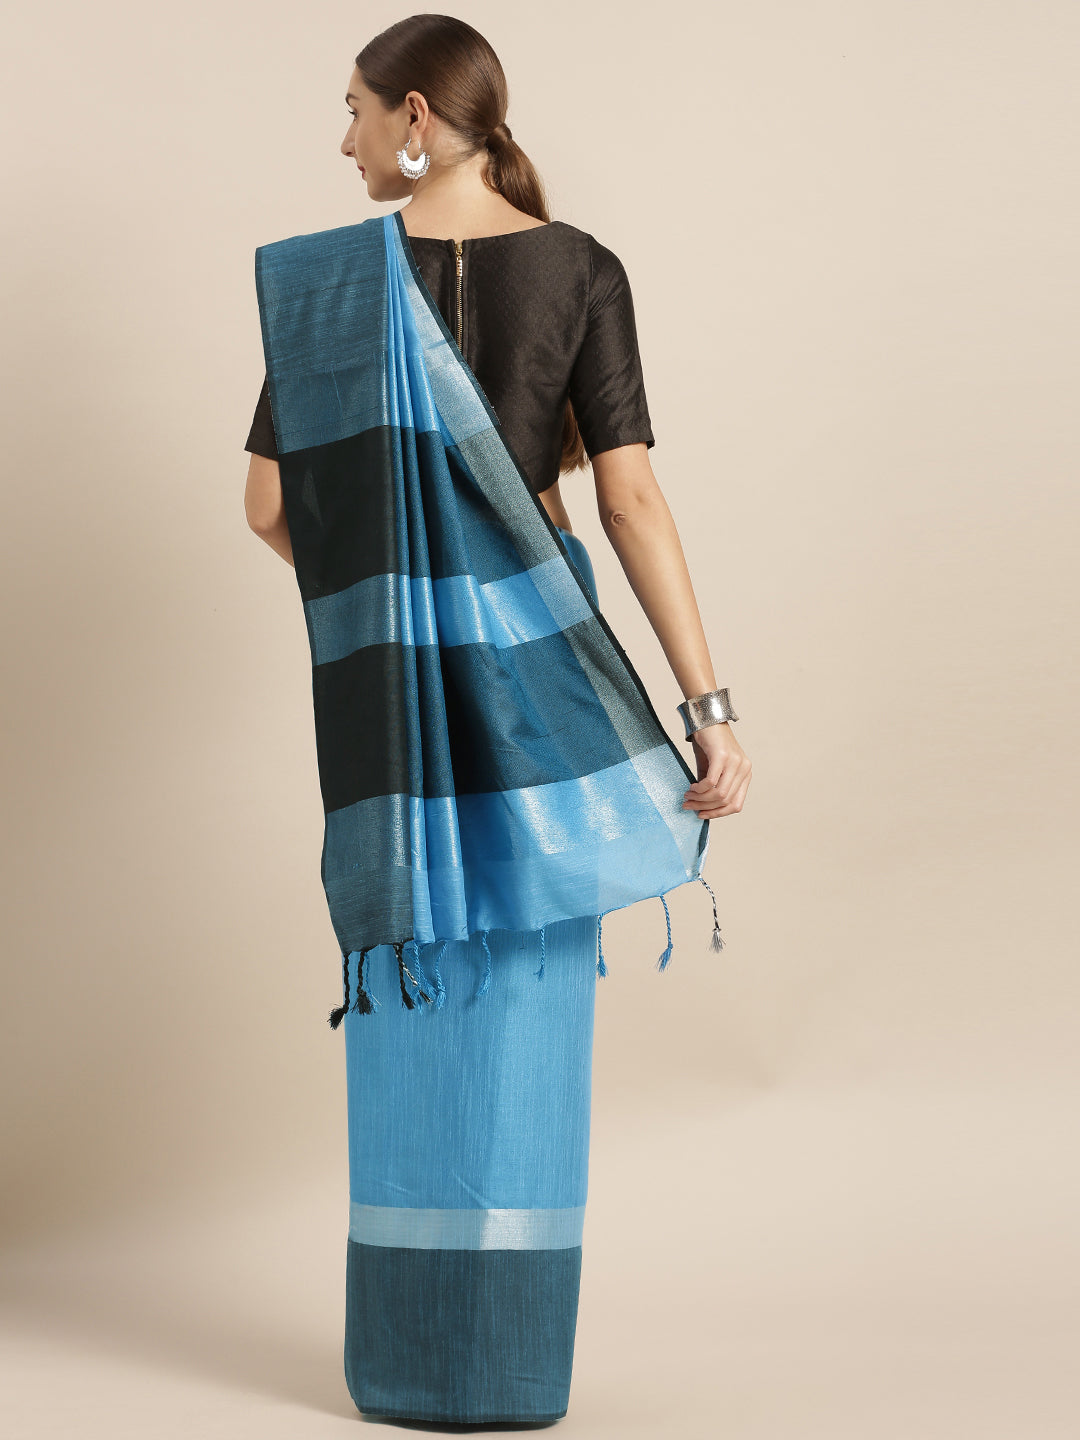 Exclusive Blue Colour Solid Linen Blend Saree